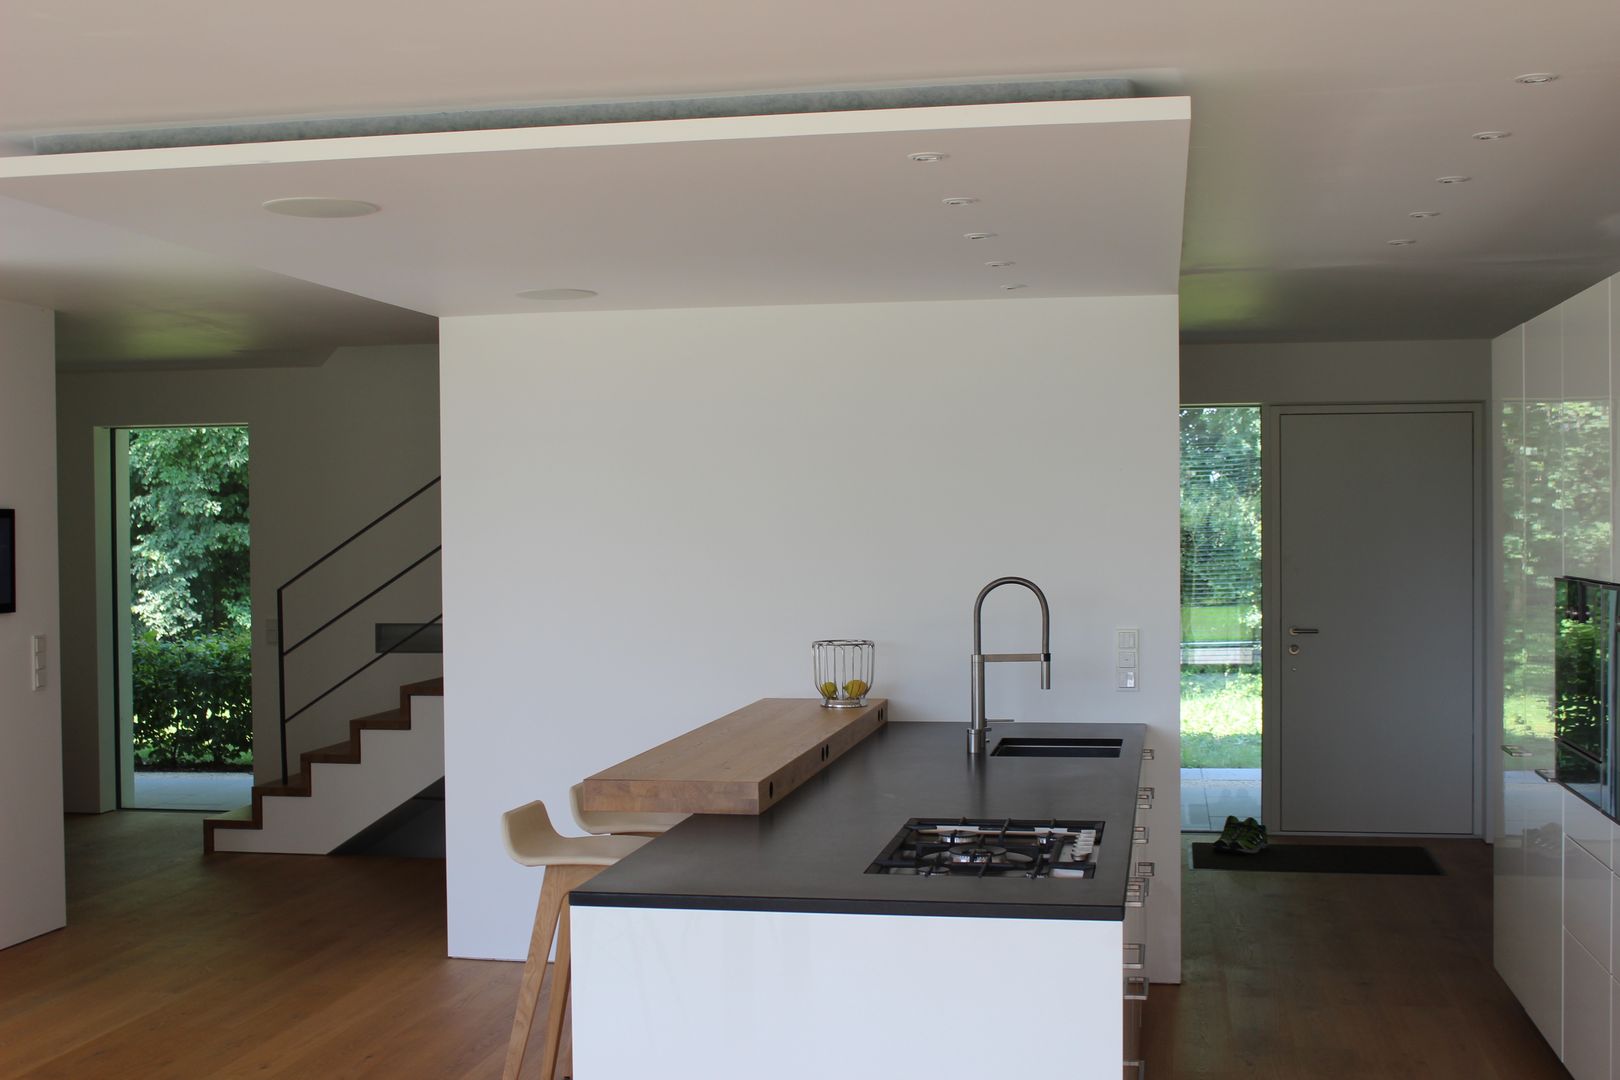 Einfamilienhaus in Prien am Chiemsee, Architekt Namberger Architekt Namberger Kitchen Sinks & taps